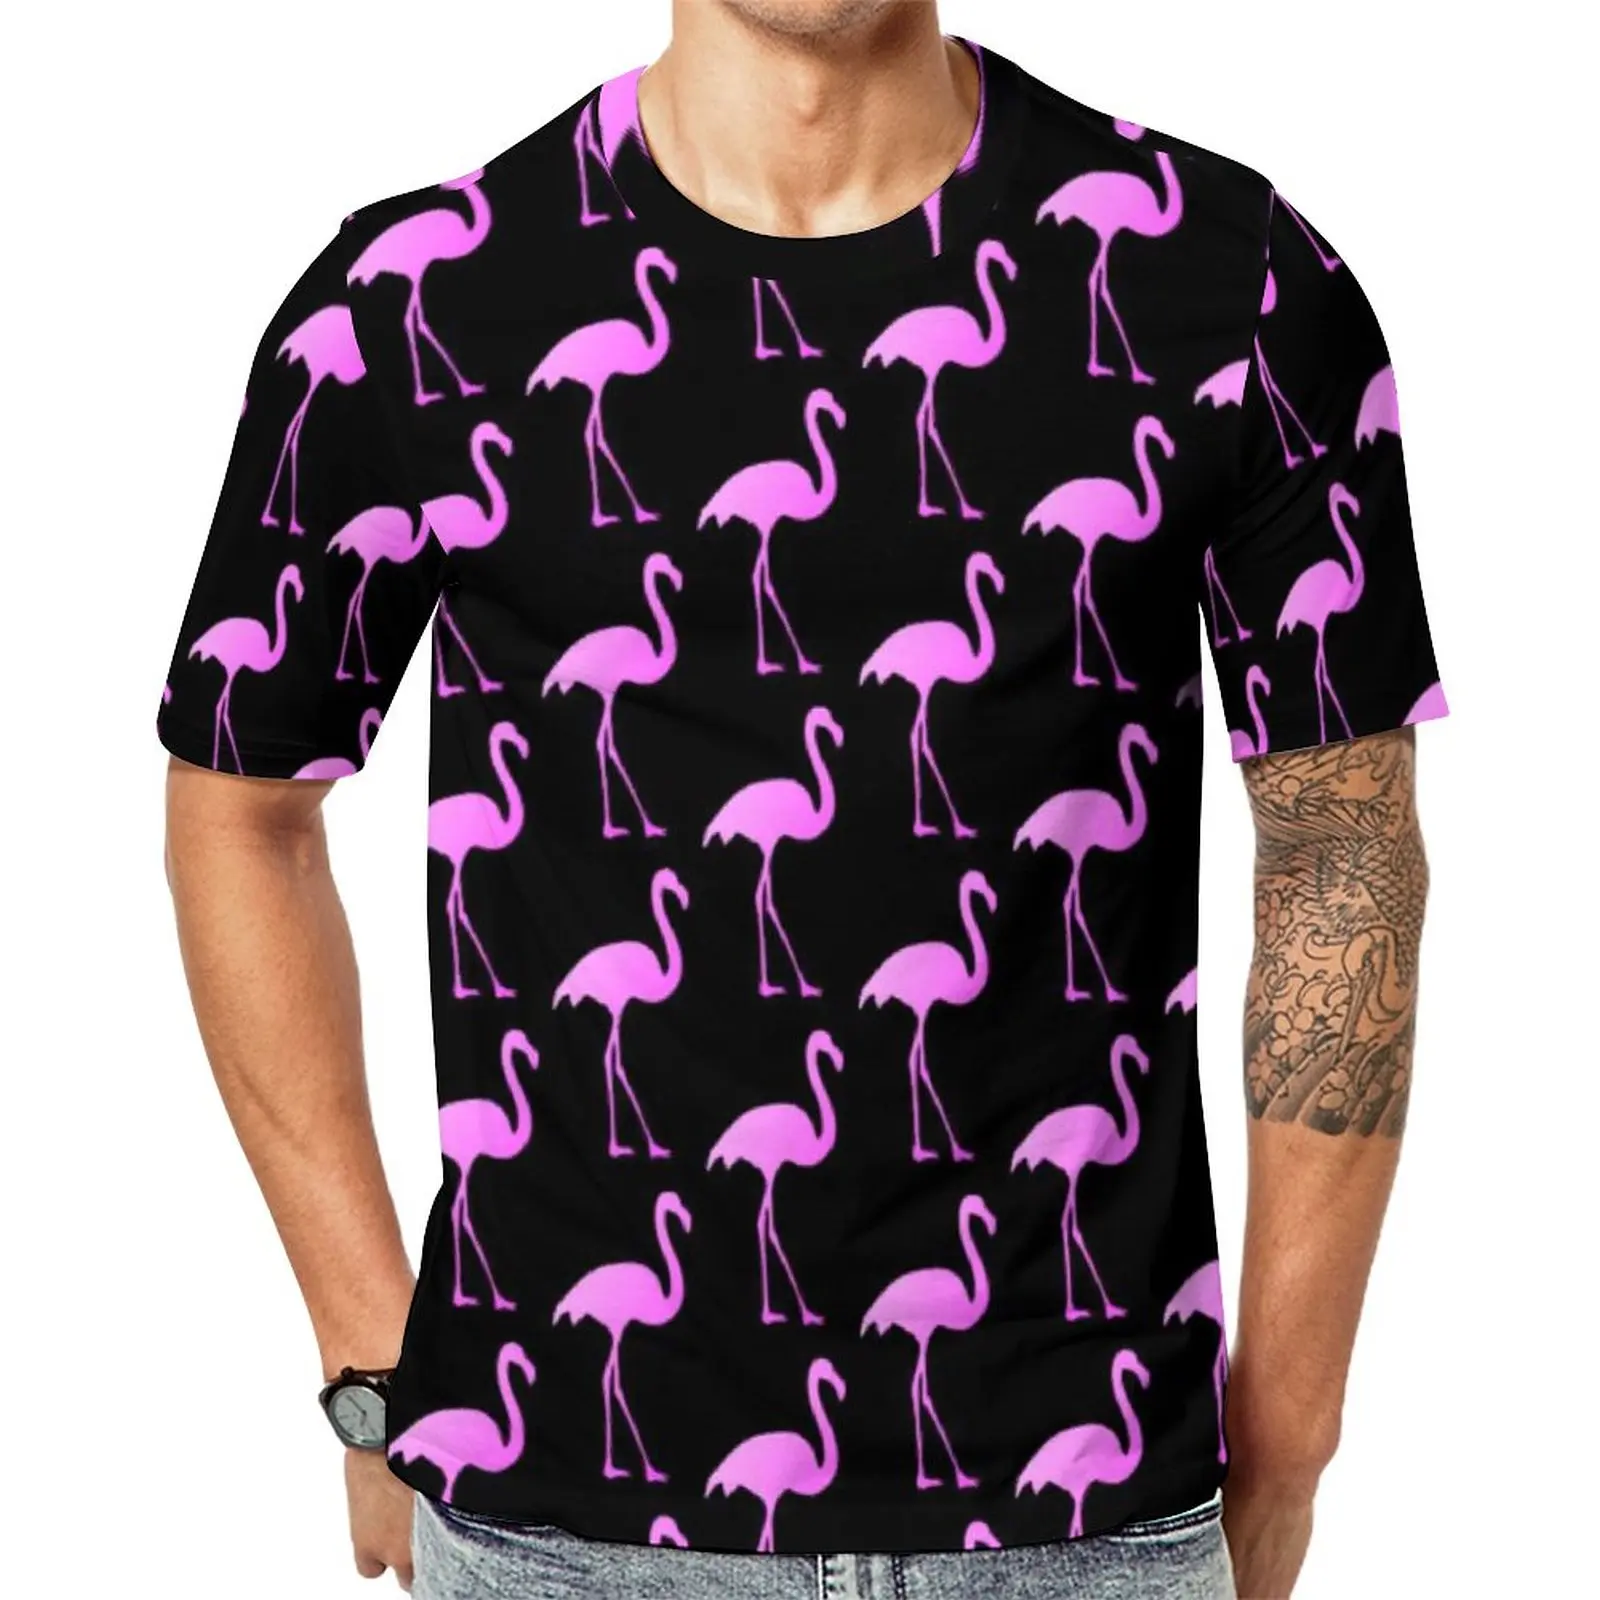 

Футболка мужская с принтом птиц, трендовая тенниска с розовым фламинго, Оригинальная дизайнерская рубашка с коротким рукавом, размеры 4XL, 5XL, 6XL